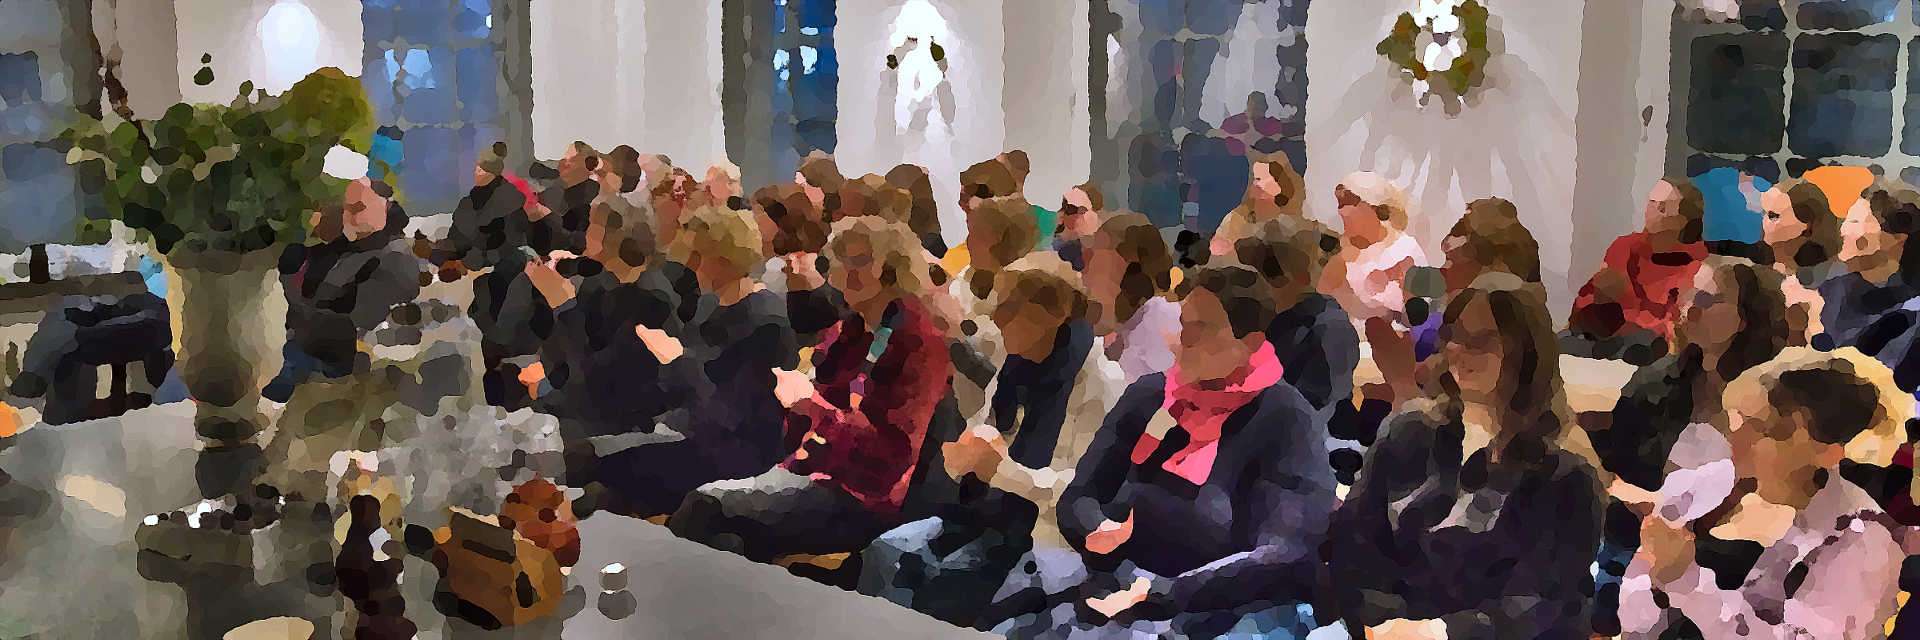 Applaudierendes Publikum im winterlich geschmückten Literaturcafé